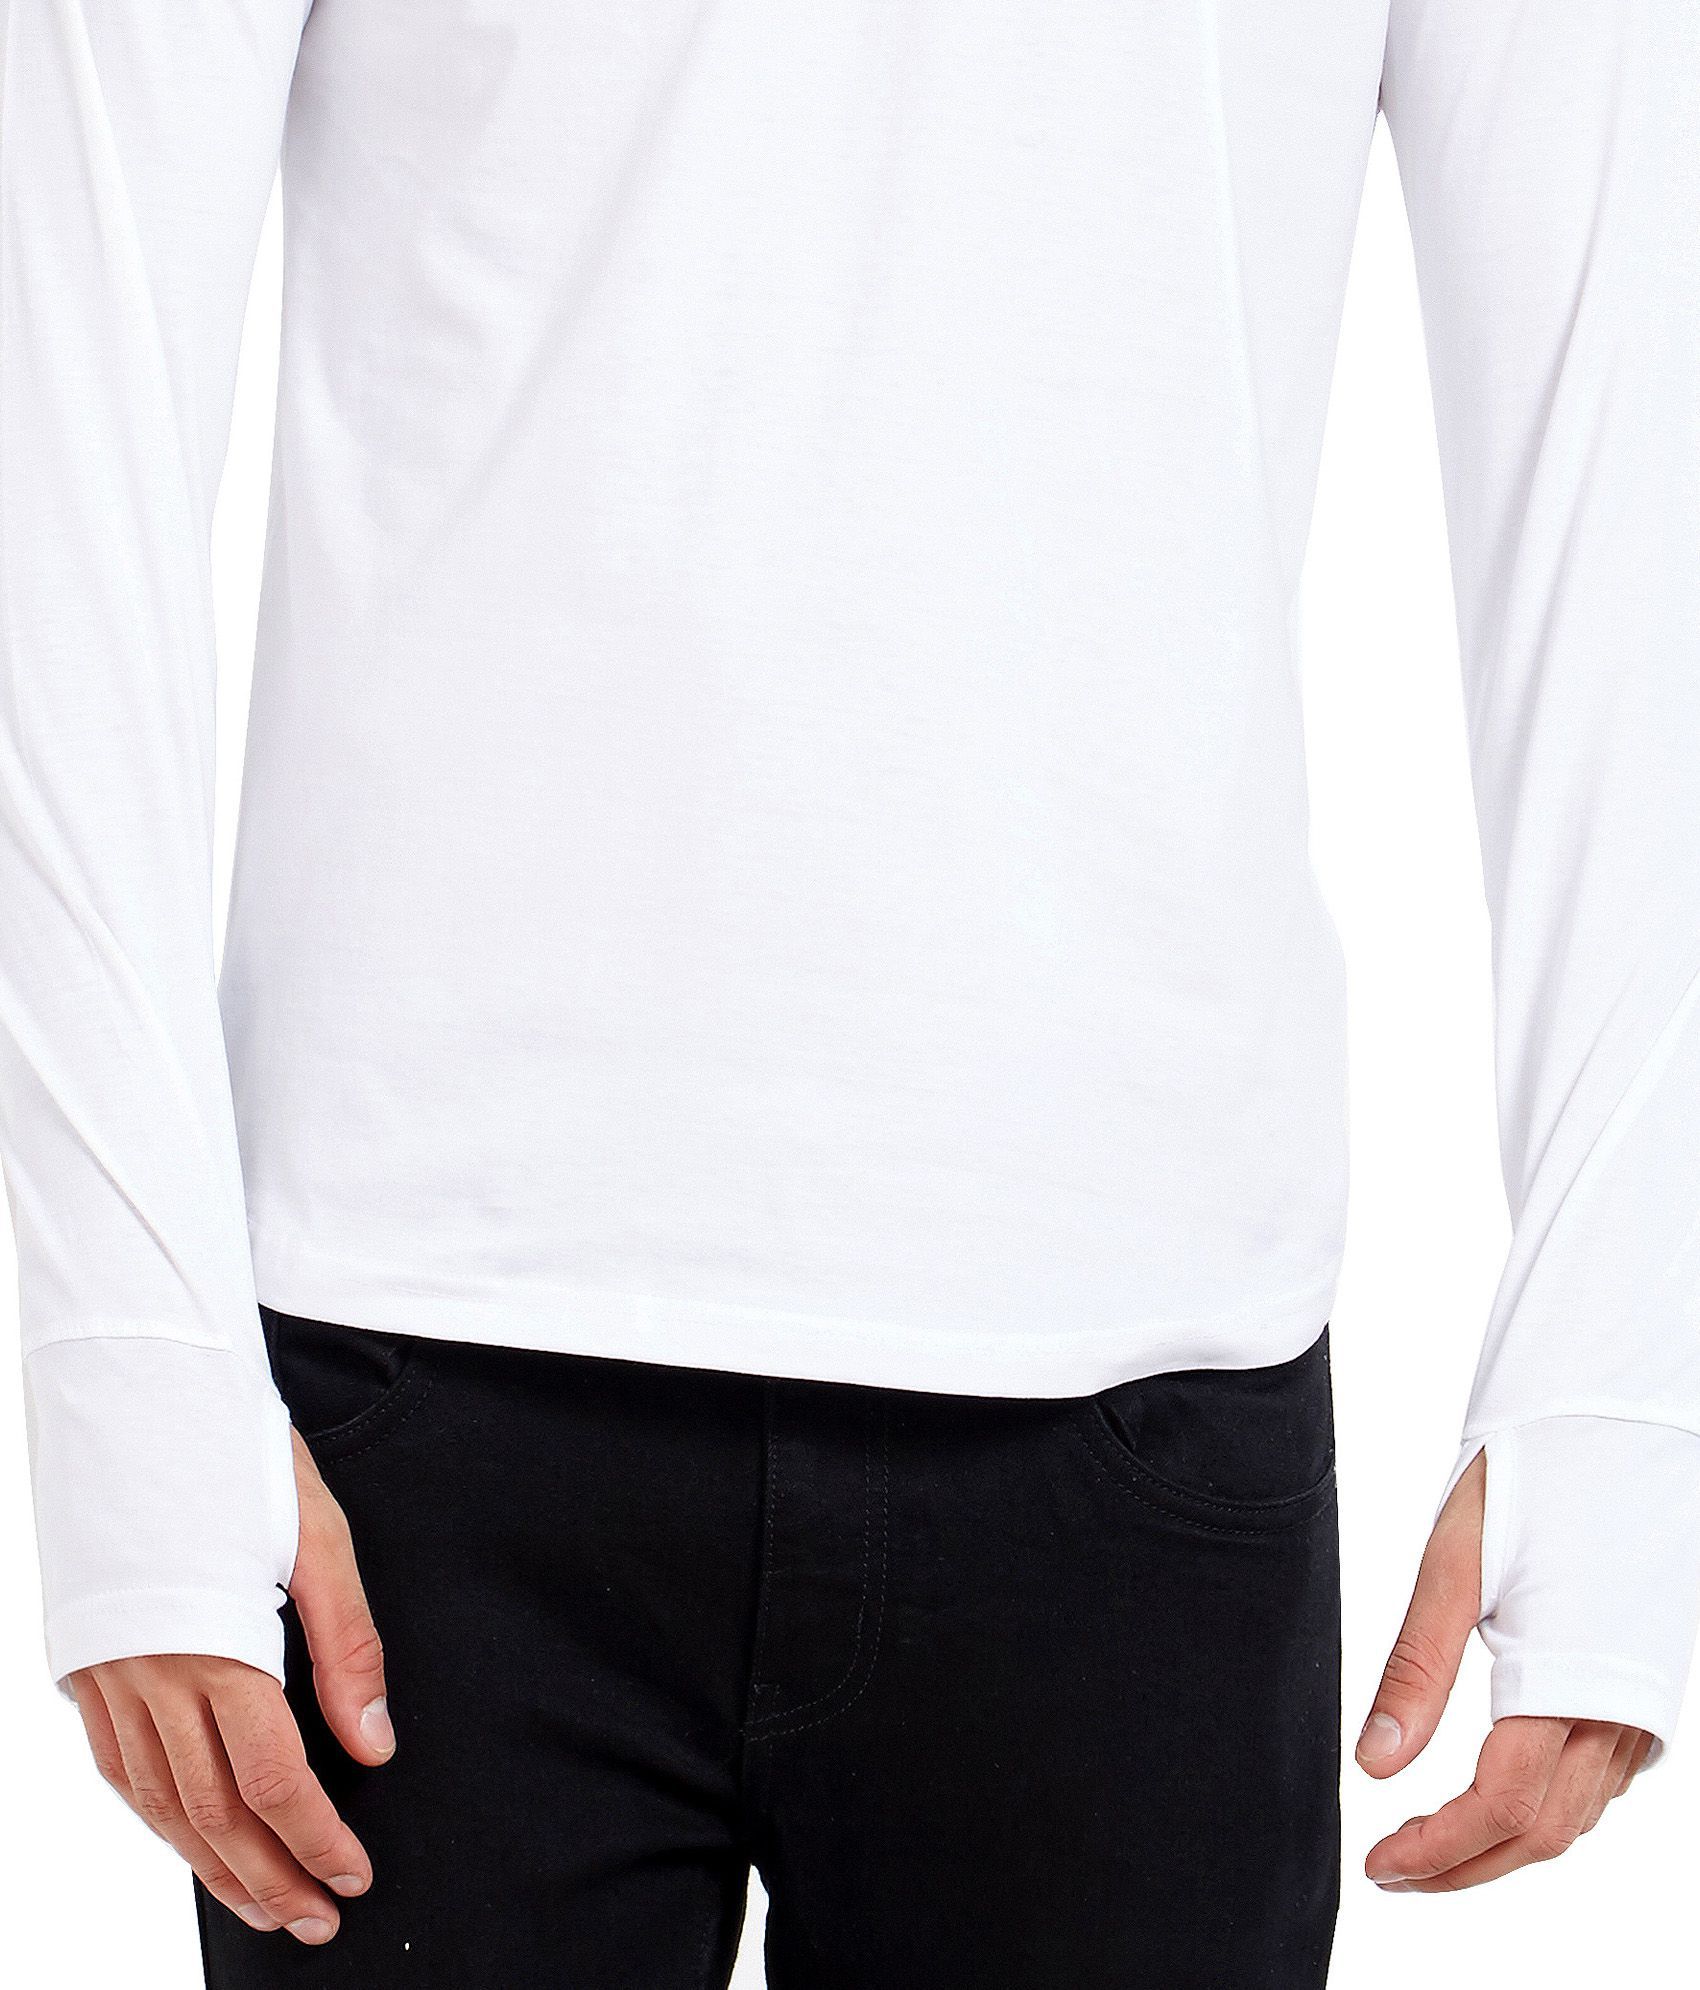 Maniac White Full Sleeve thumbhole T-Shirt - Buy Maniac White Full ...